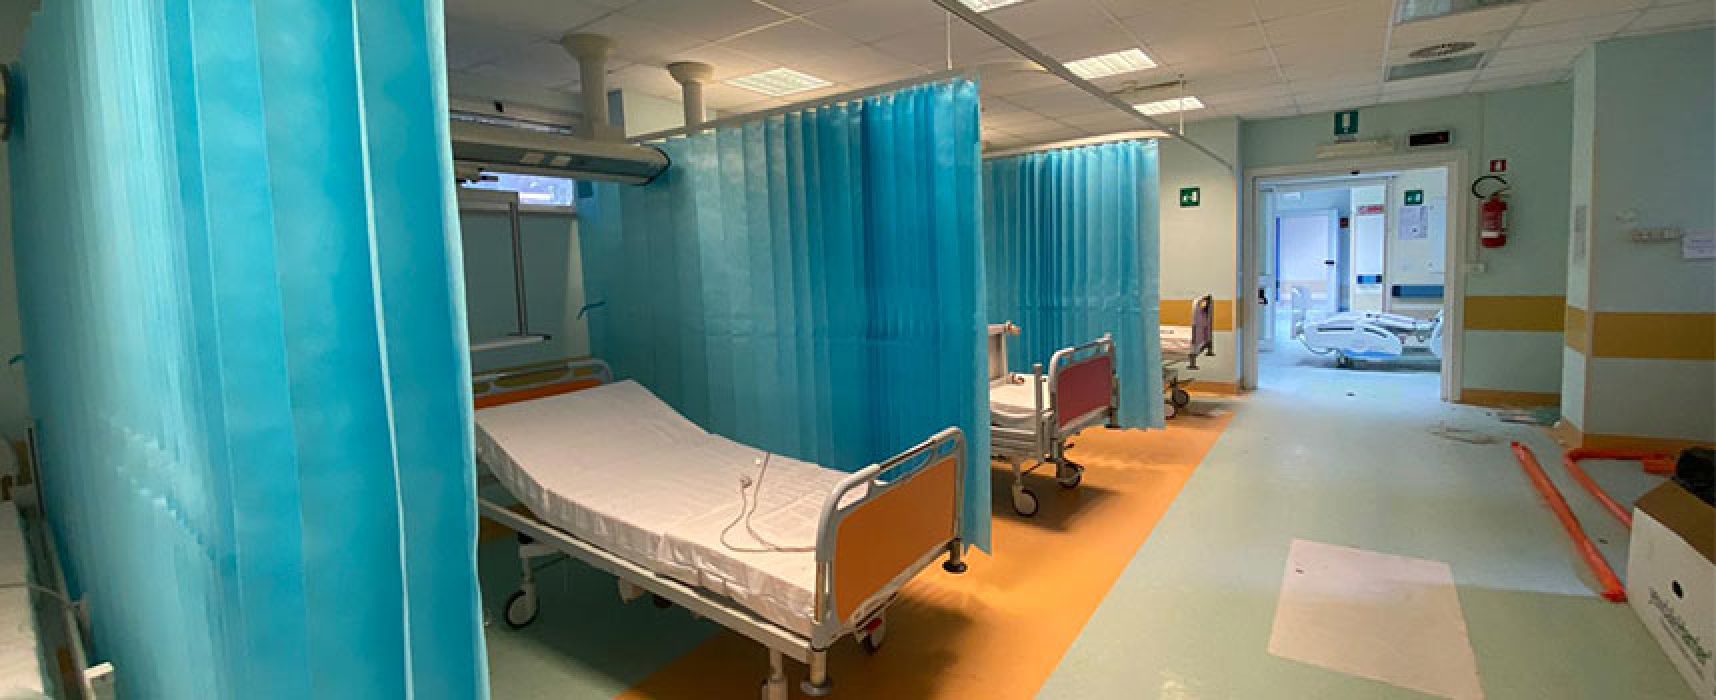 Riattivazione reparti ospedale Bisceglie, Spina: “Convocato consiglio comunale da noi richiesto”